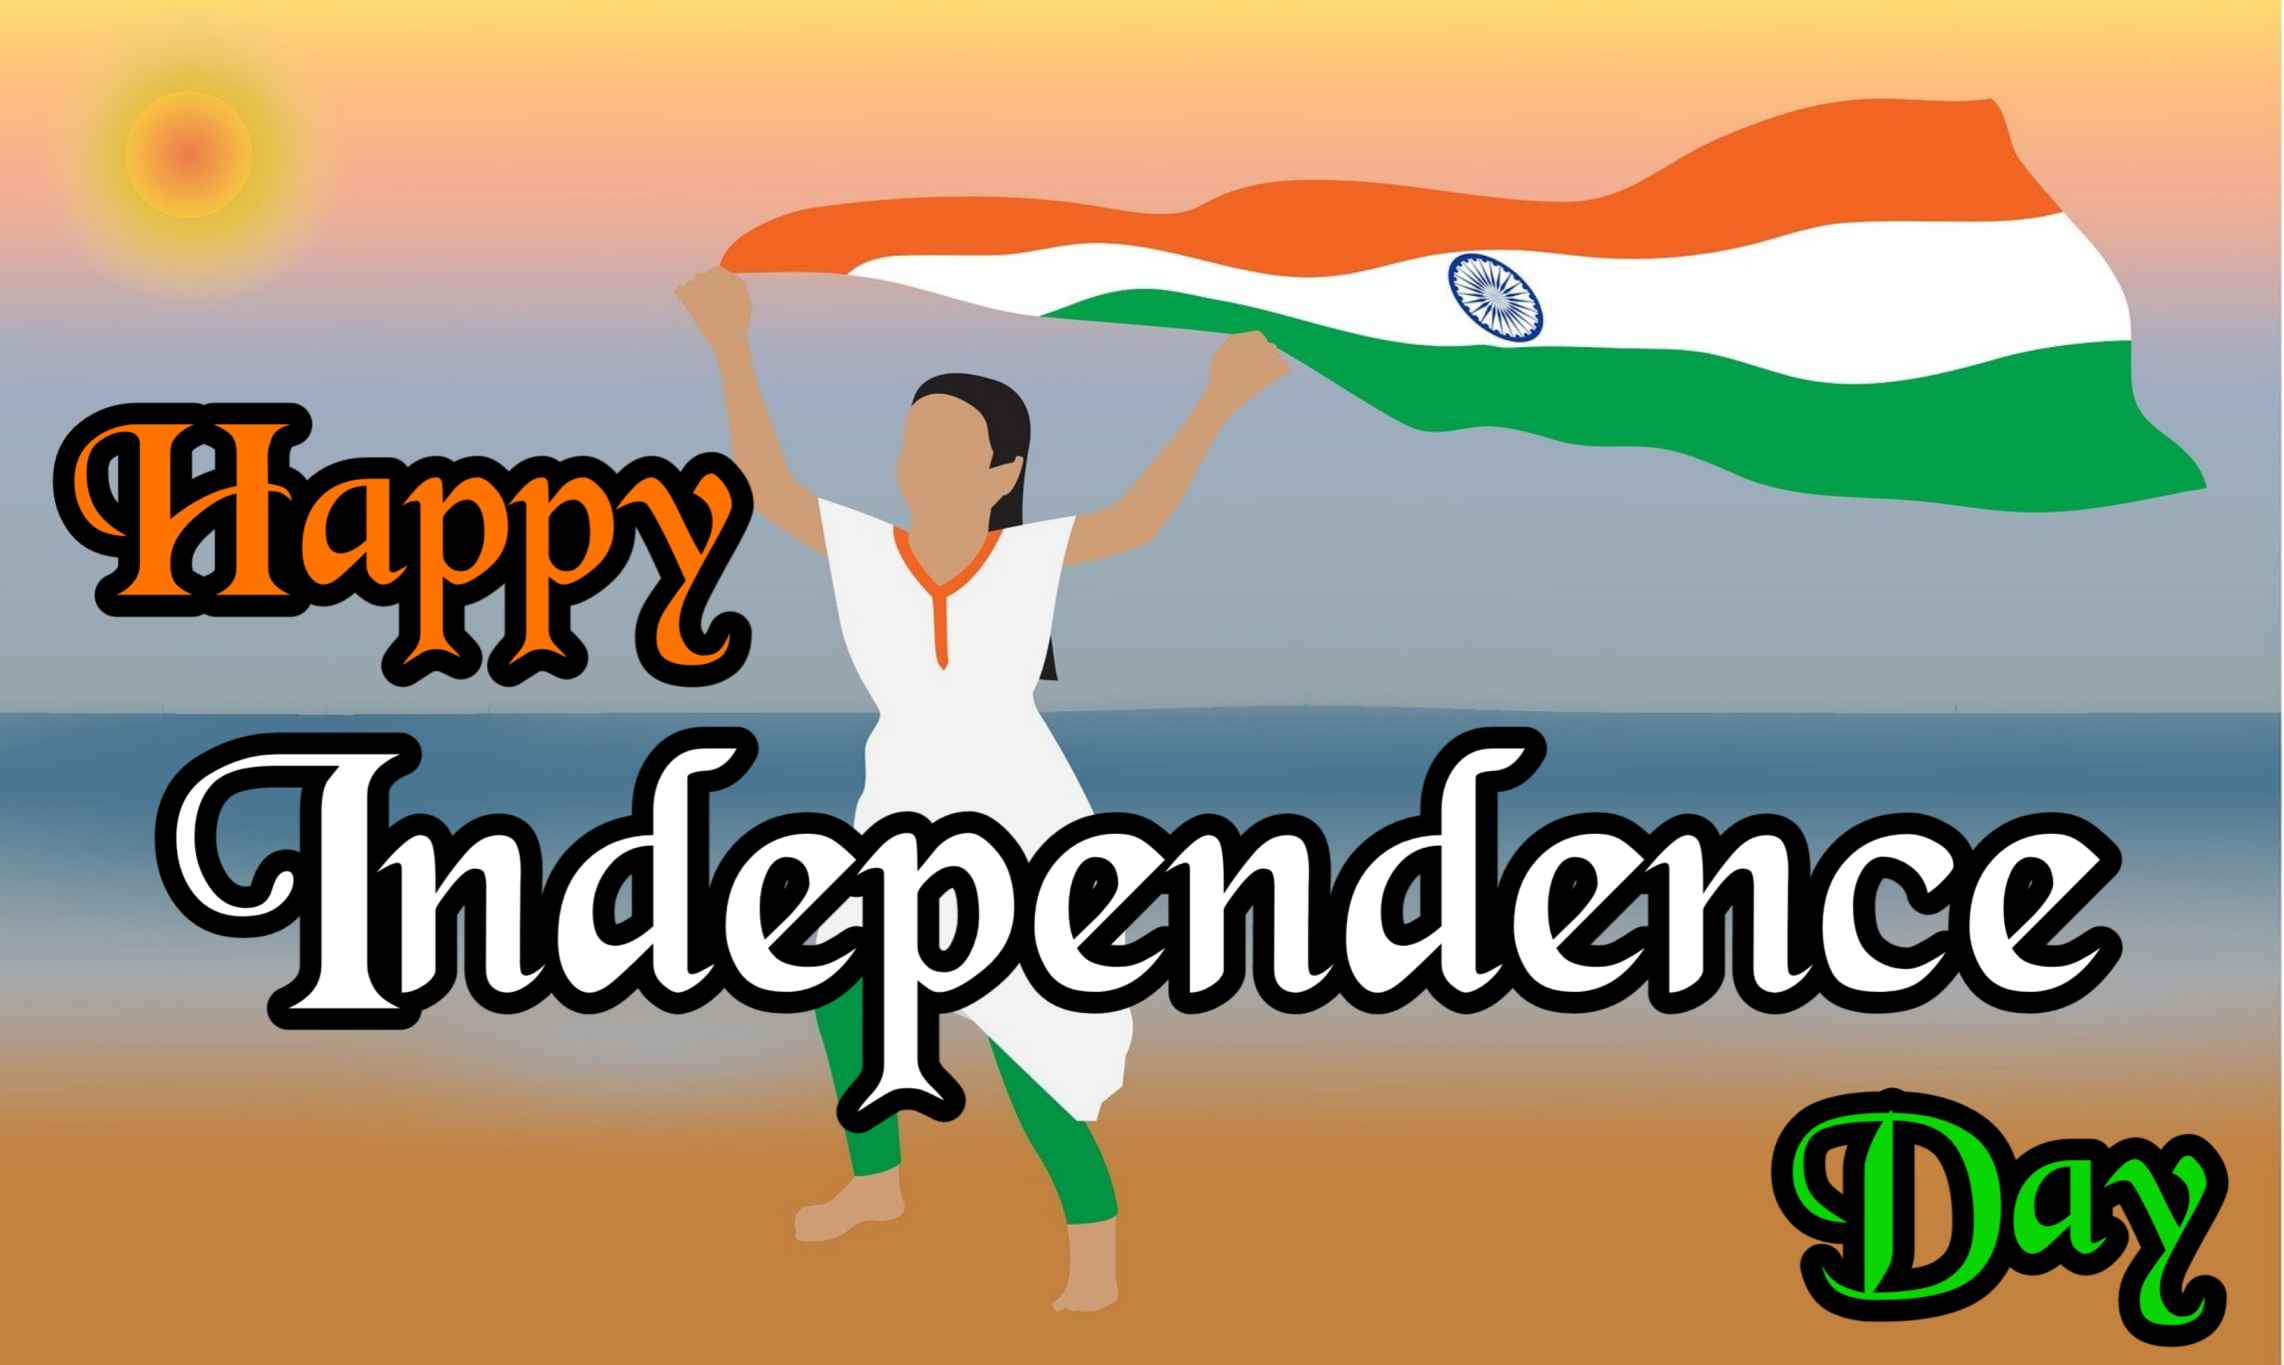 स्वतंत्रता दिवस [15 Aug] के बधाई मैसेज और फोटो